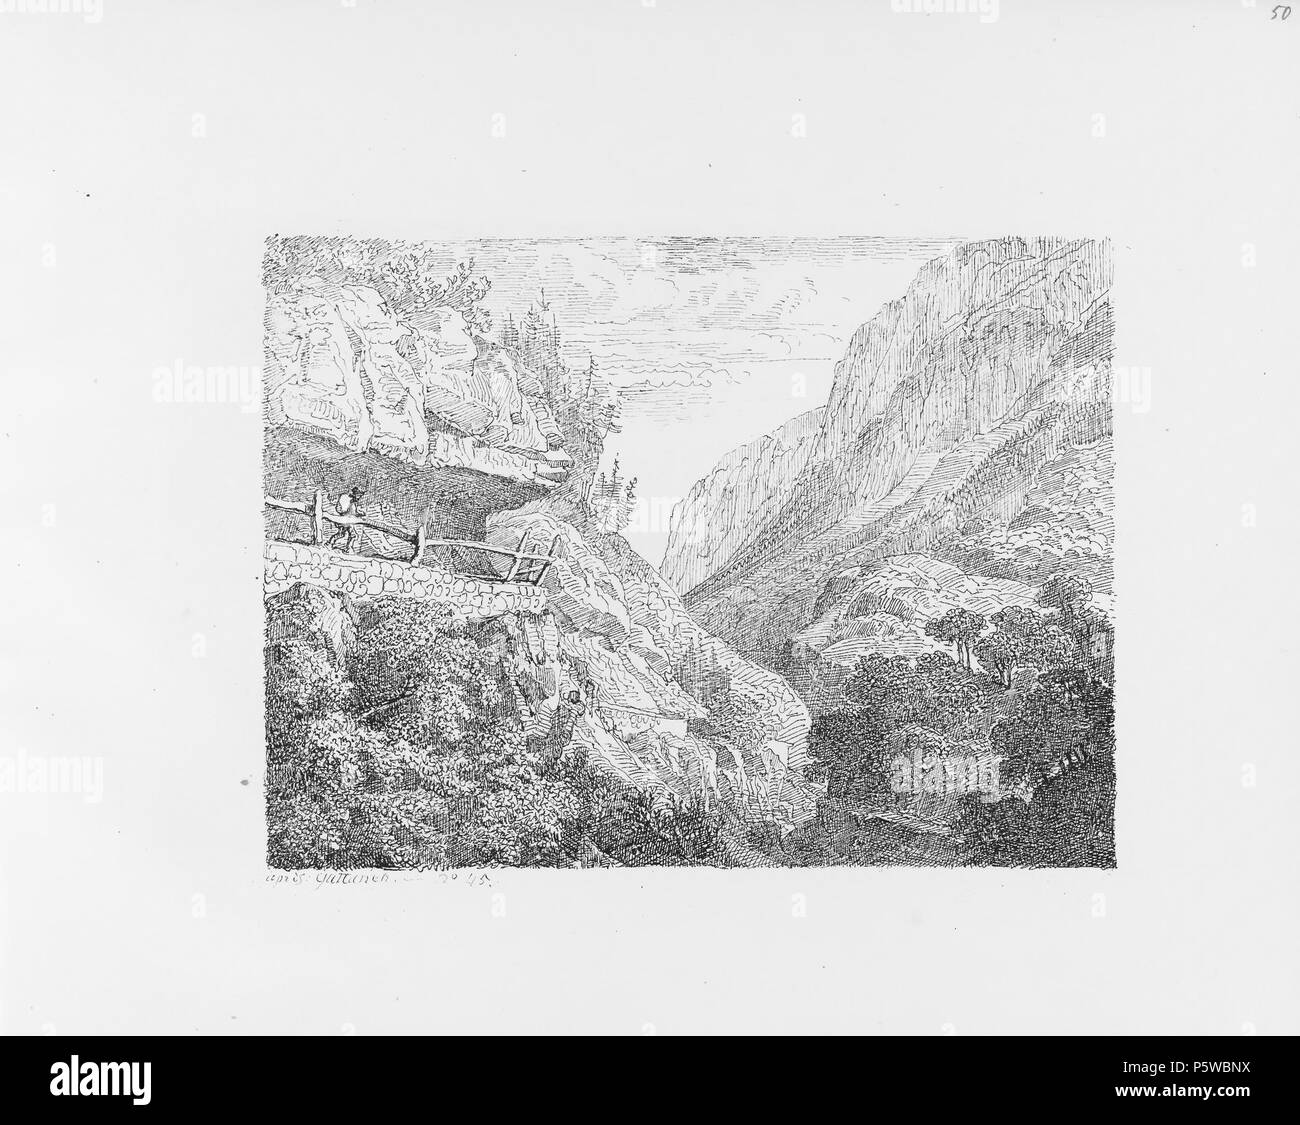 322 CH-NB-Voyage autour du Mont-Blanc dans les vallées d'Hérens de Zermatt et au Grimsel 1843-nbdig-19161-051 Stock Photo